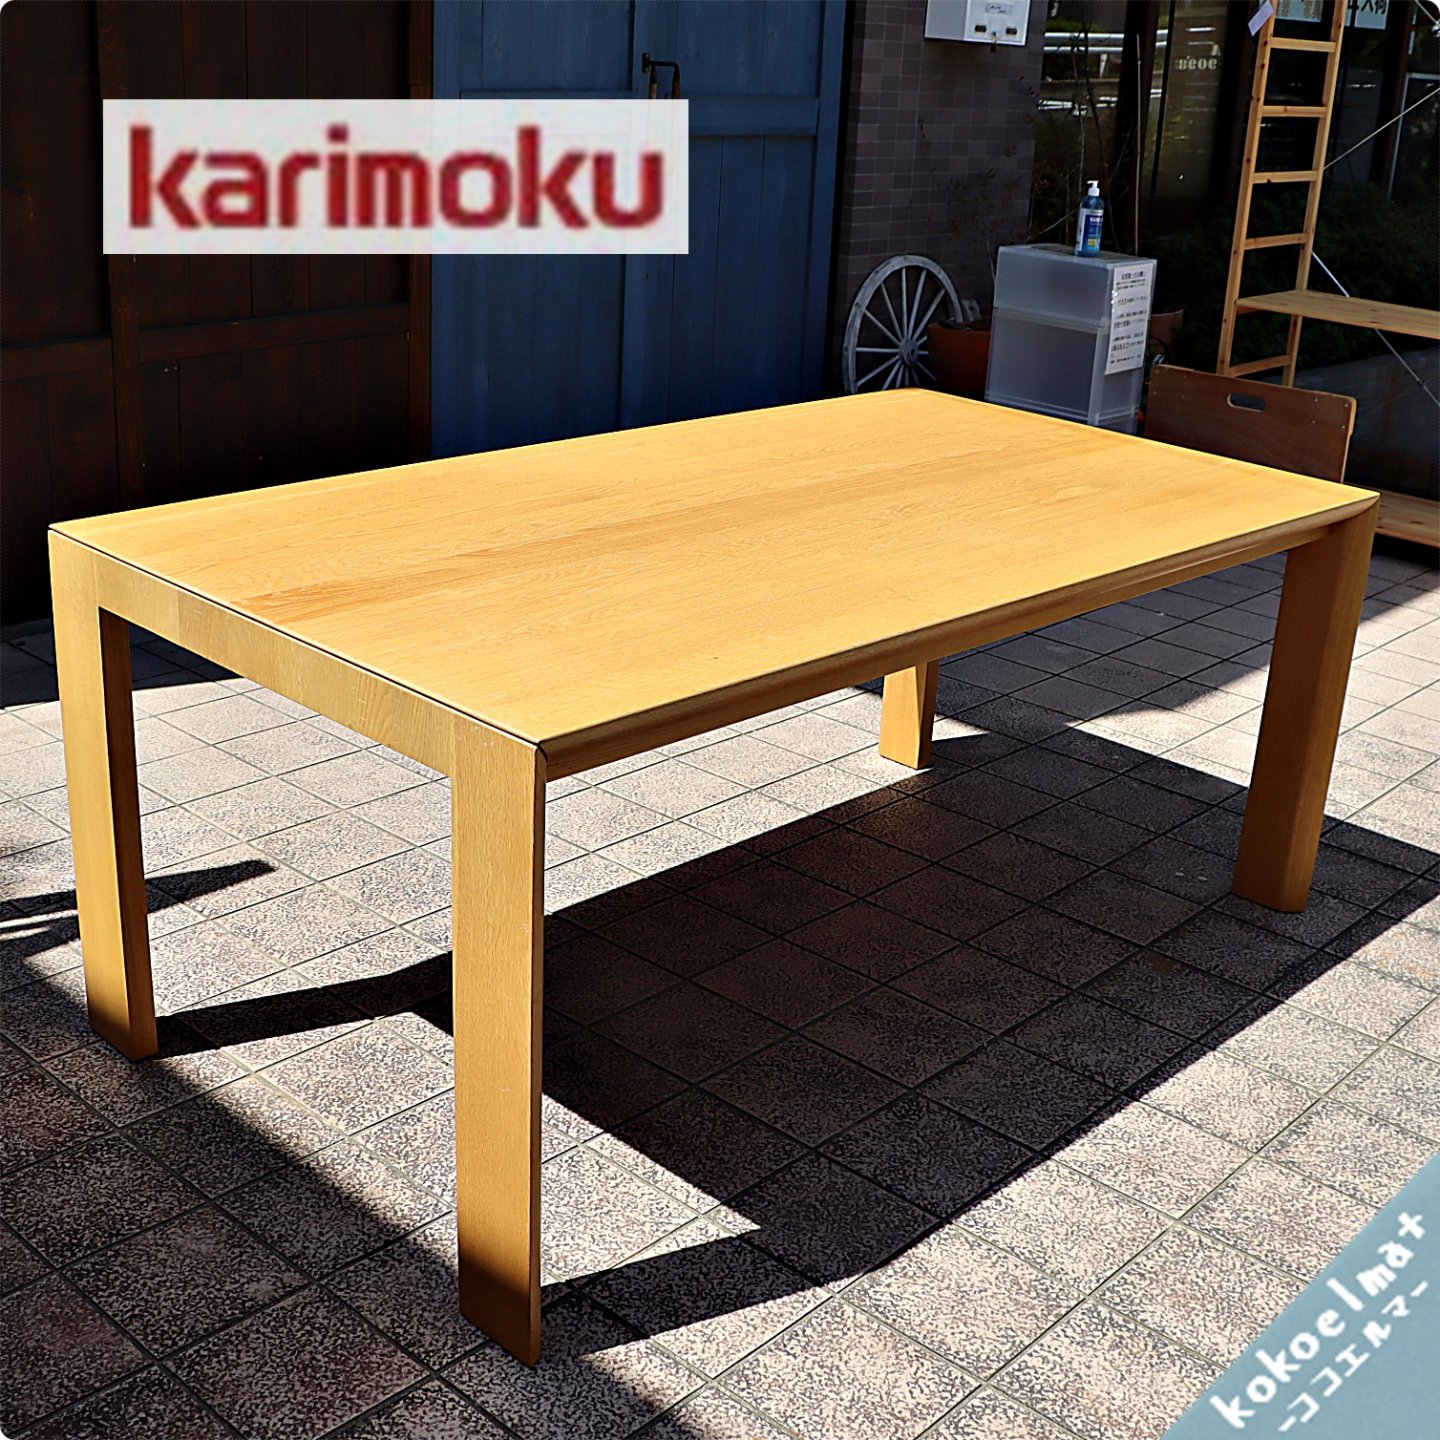 karimoku(カリモク家具)のオーク材を使用したダイニングテーブルDU5610 